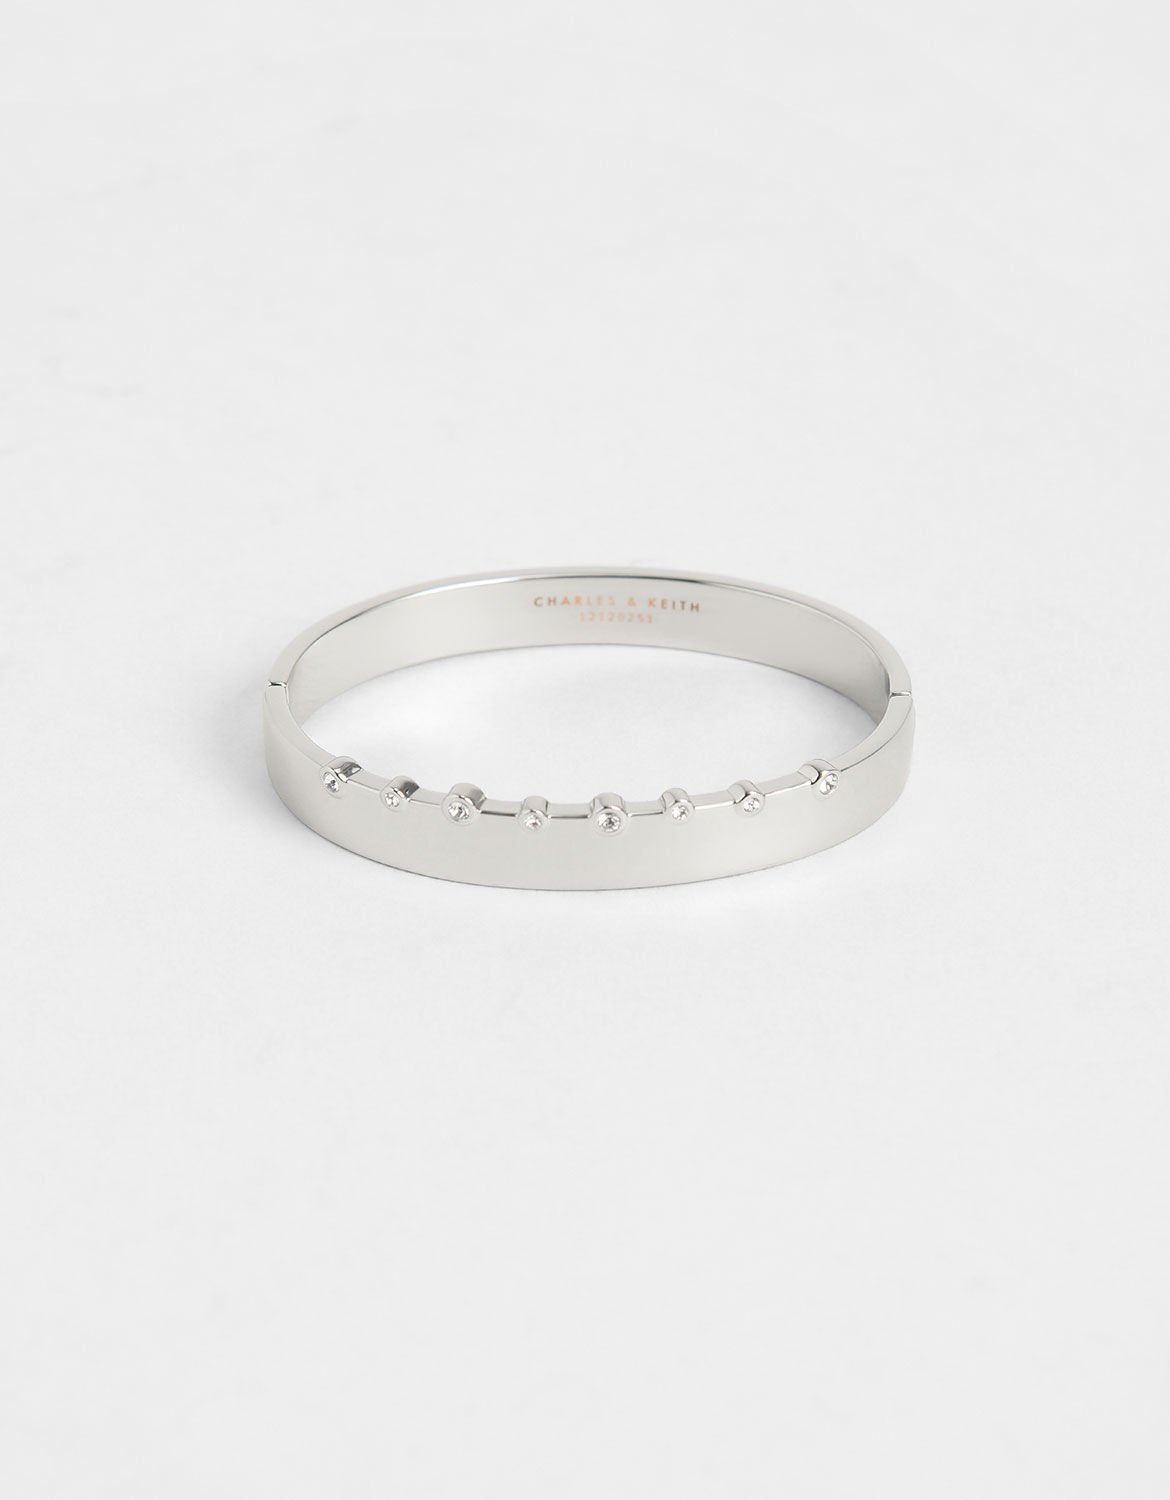 Silver Swarovski® Crystal Studded Bracelet - CHARLES & KEITH SG